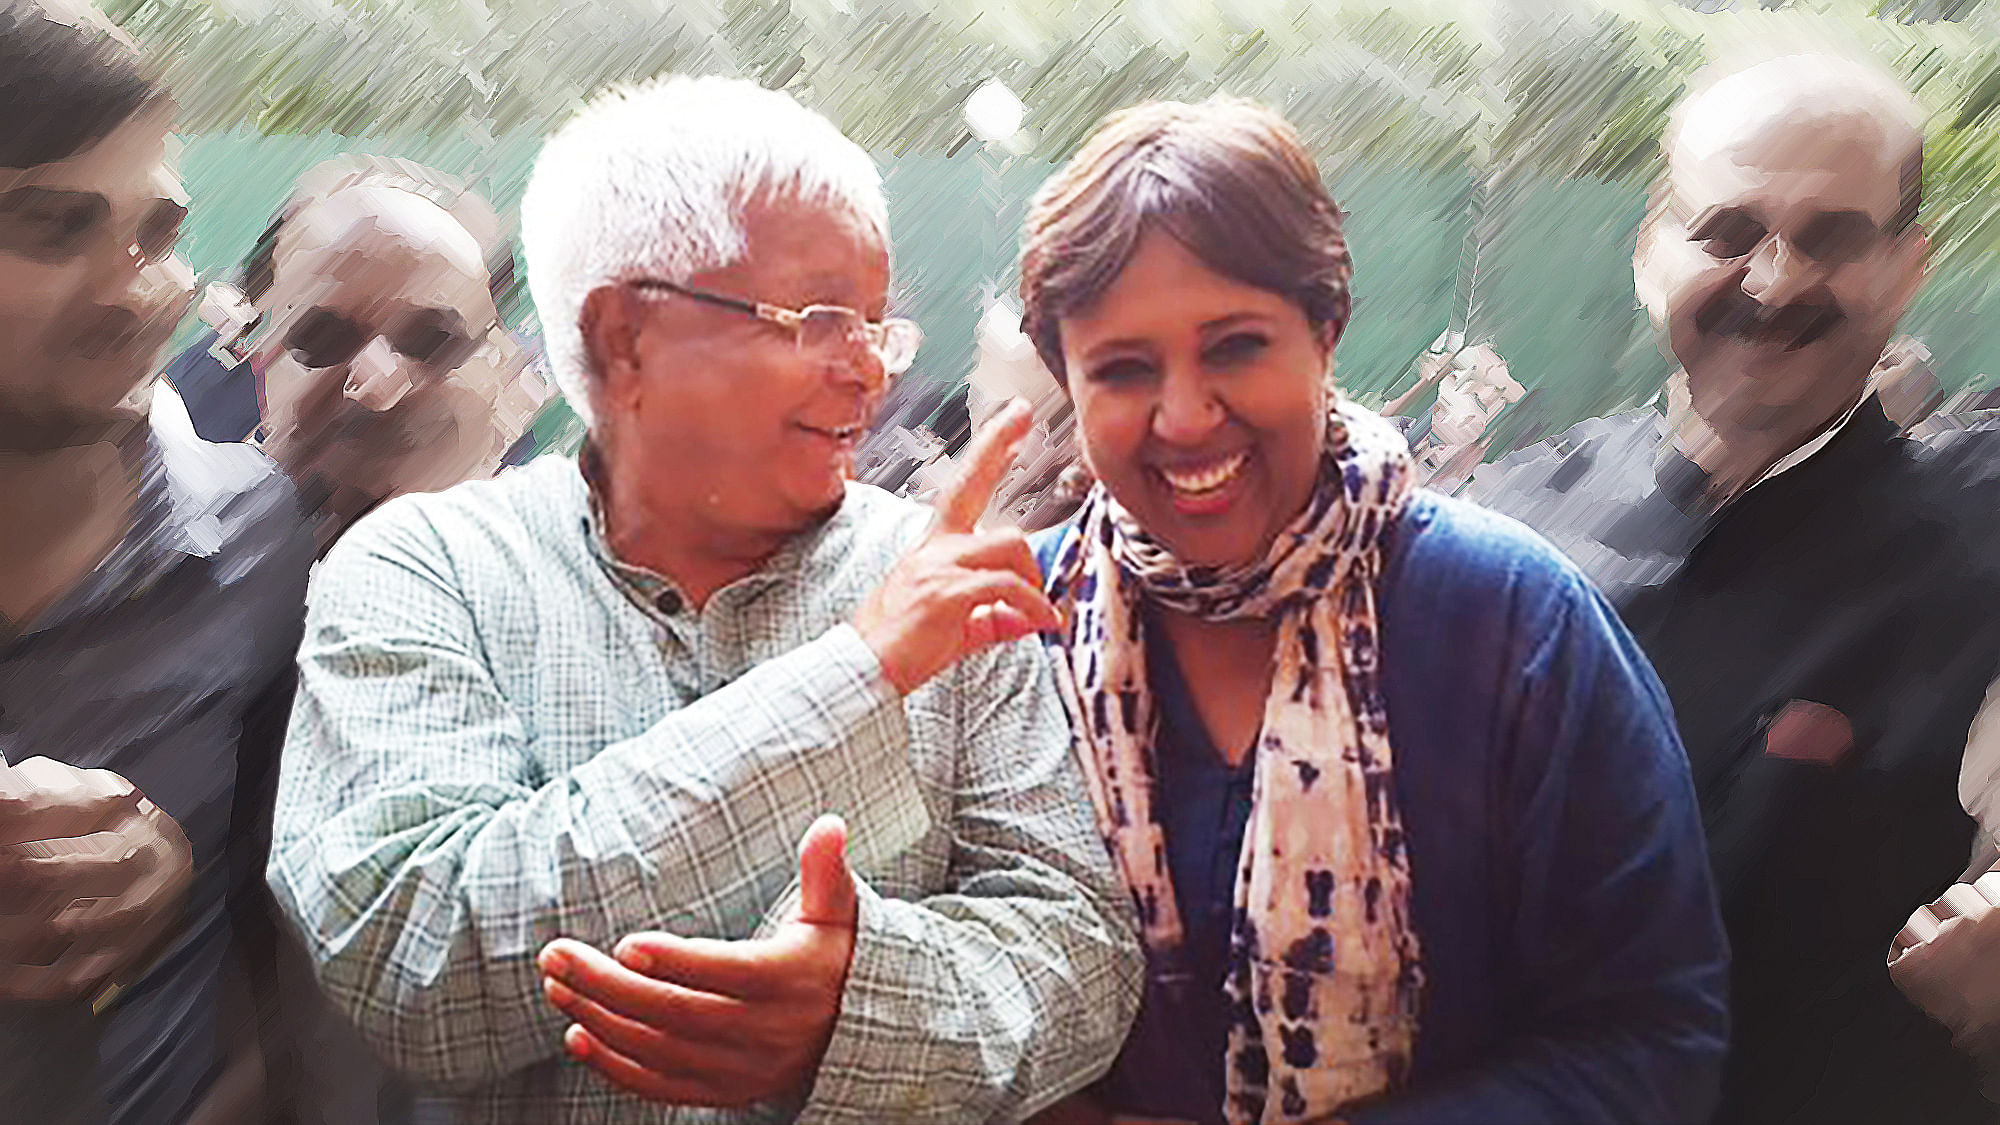 Barkha Dutt sharing a light moment with Lalu Prasad Yadav just before the Bihar polls. (Photo: <a href="https://twitter.com/BDUTT/status/663327686576615425">Twitter</a>)